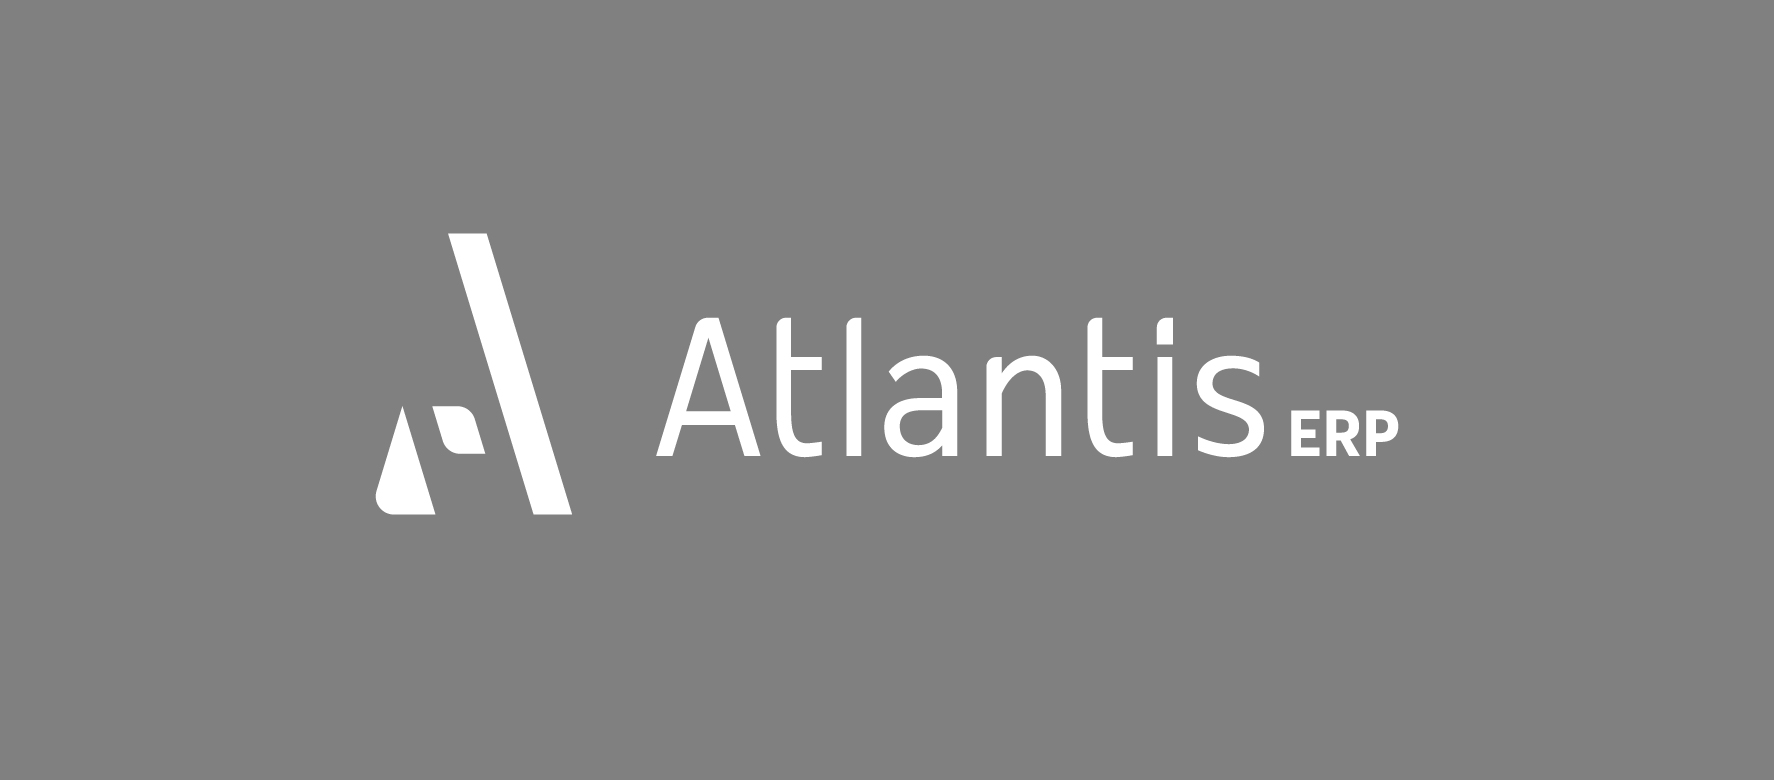 Atlantis 4.0